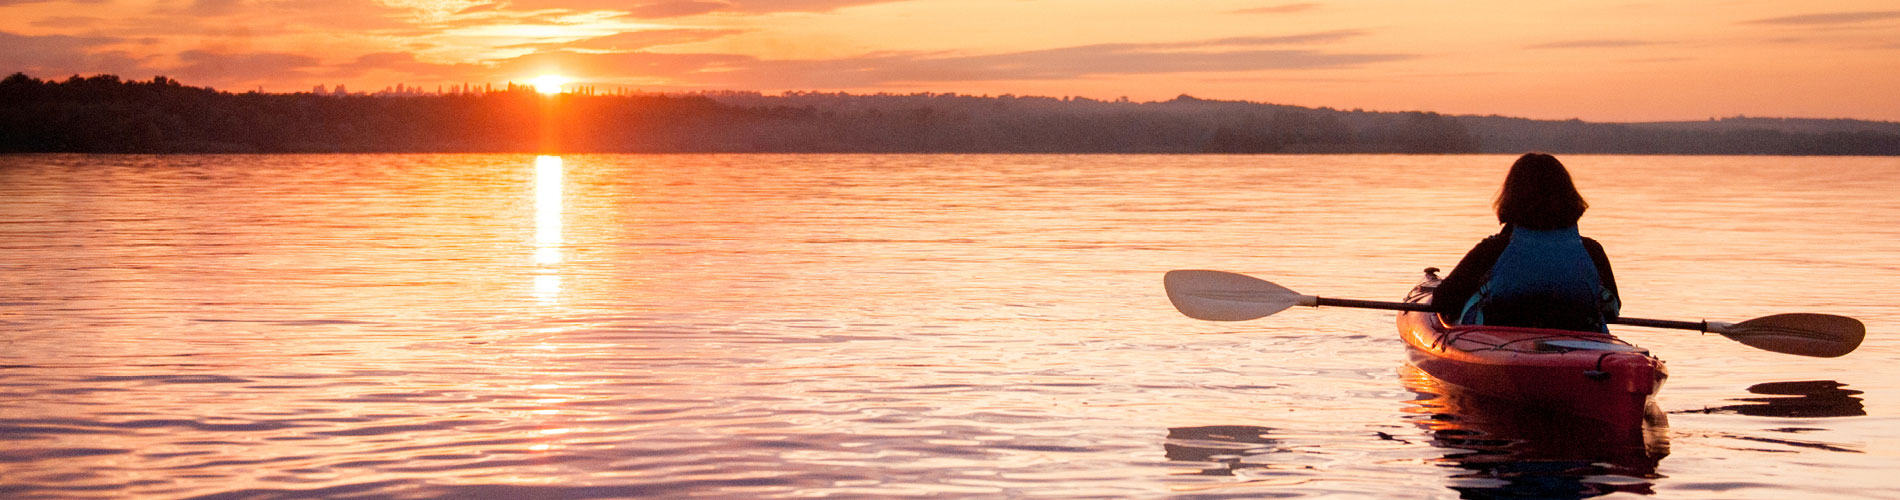 kayaking on lake at sunset